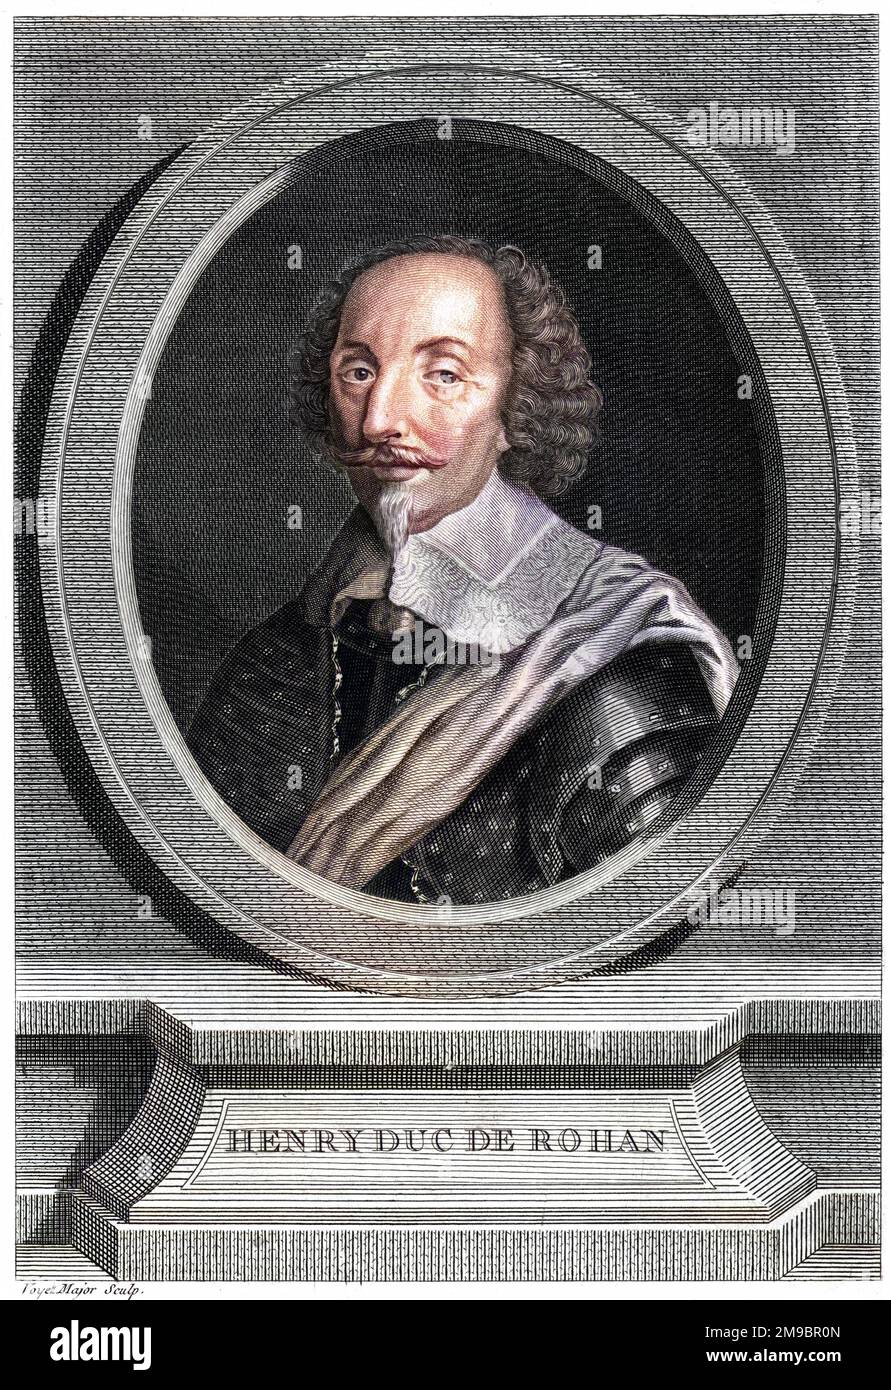 HENRI deduce de ROHAN leader protestante francese, e come tale un avversario di Richelieu. Foto Stock